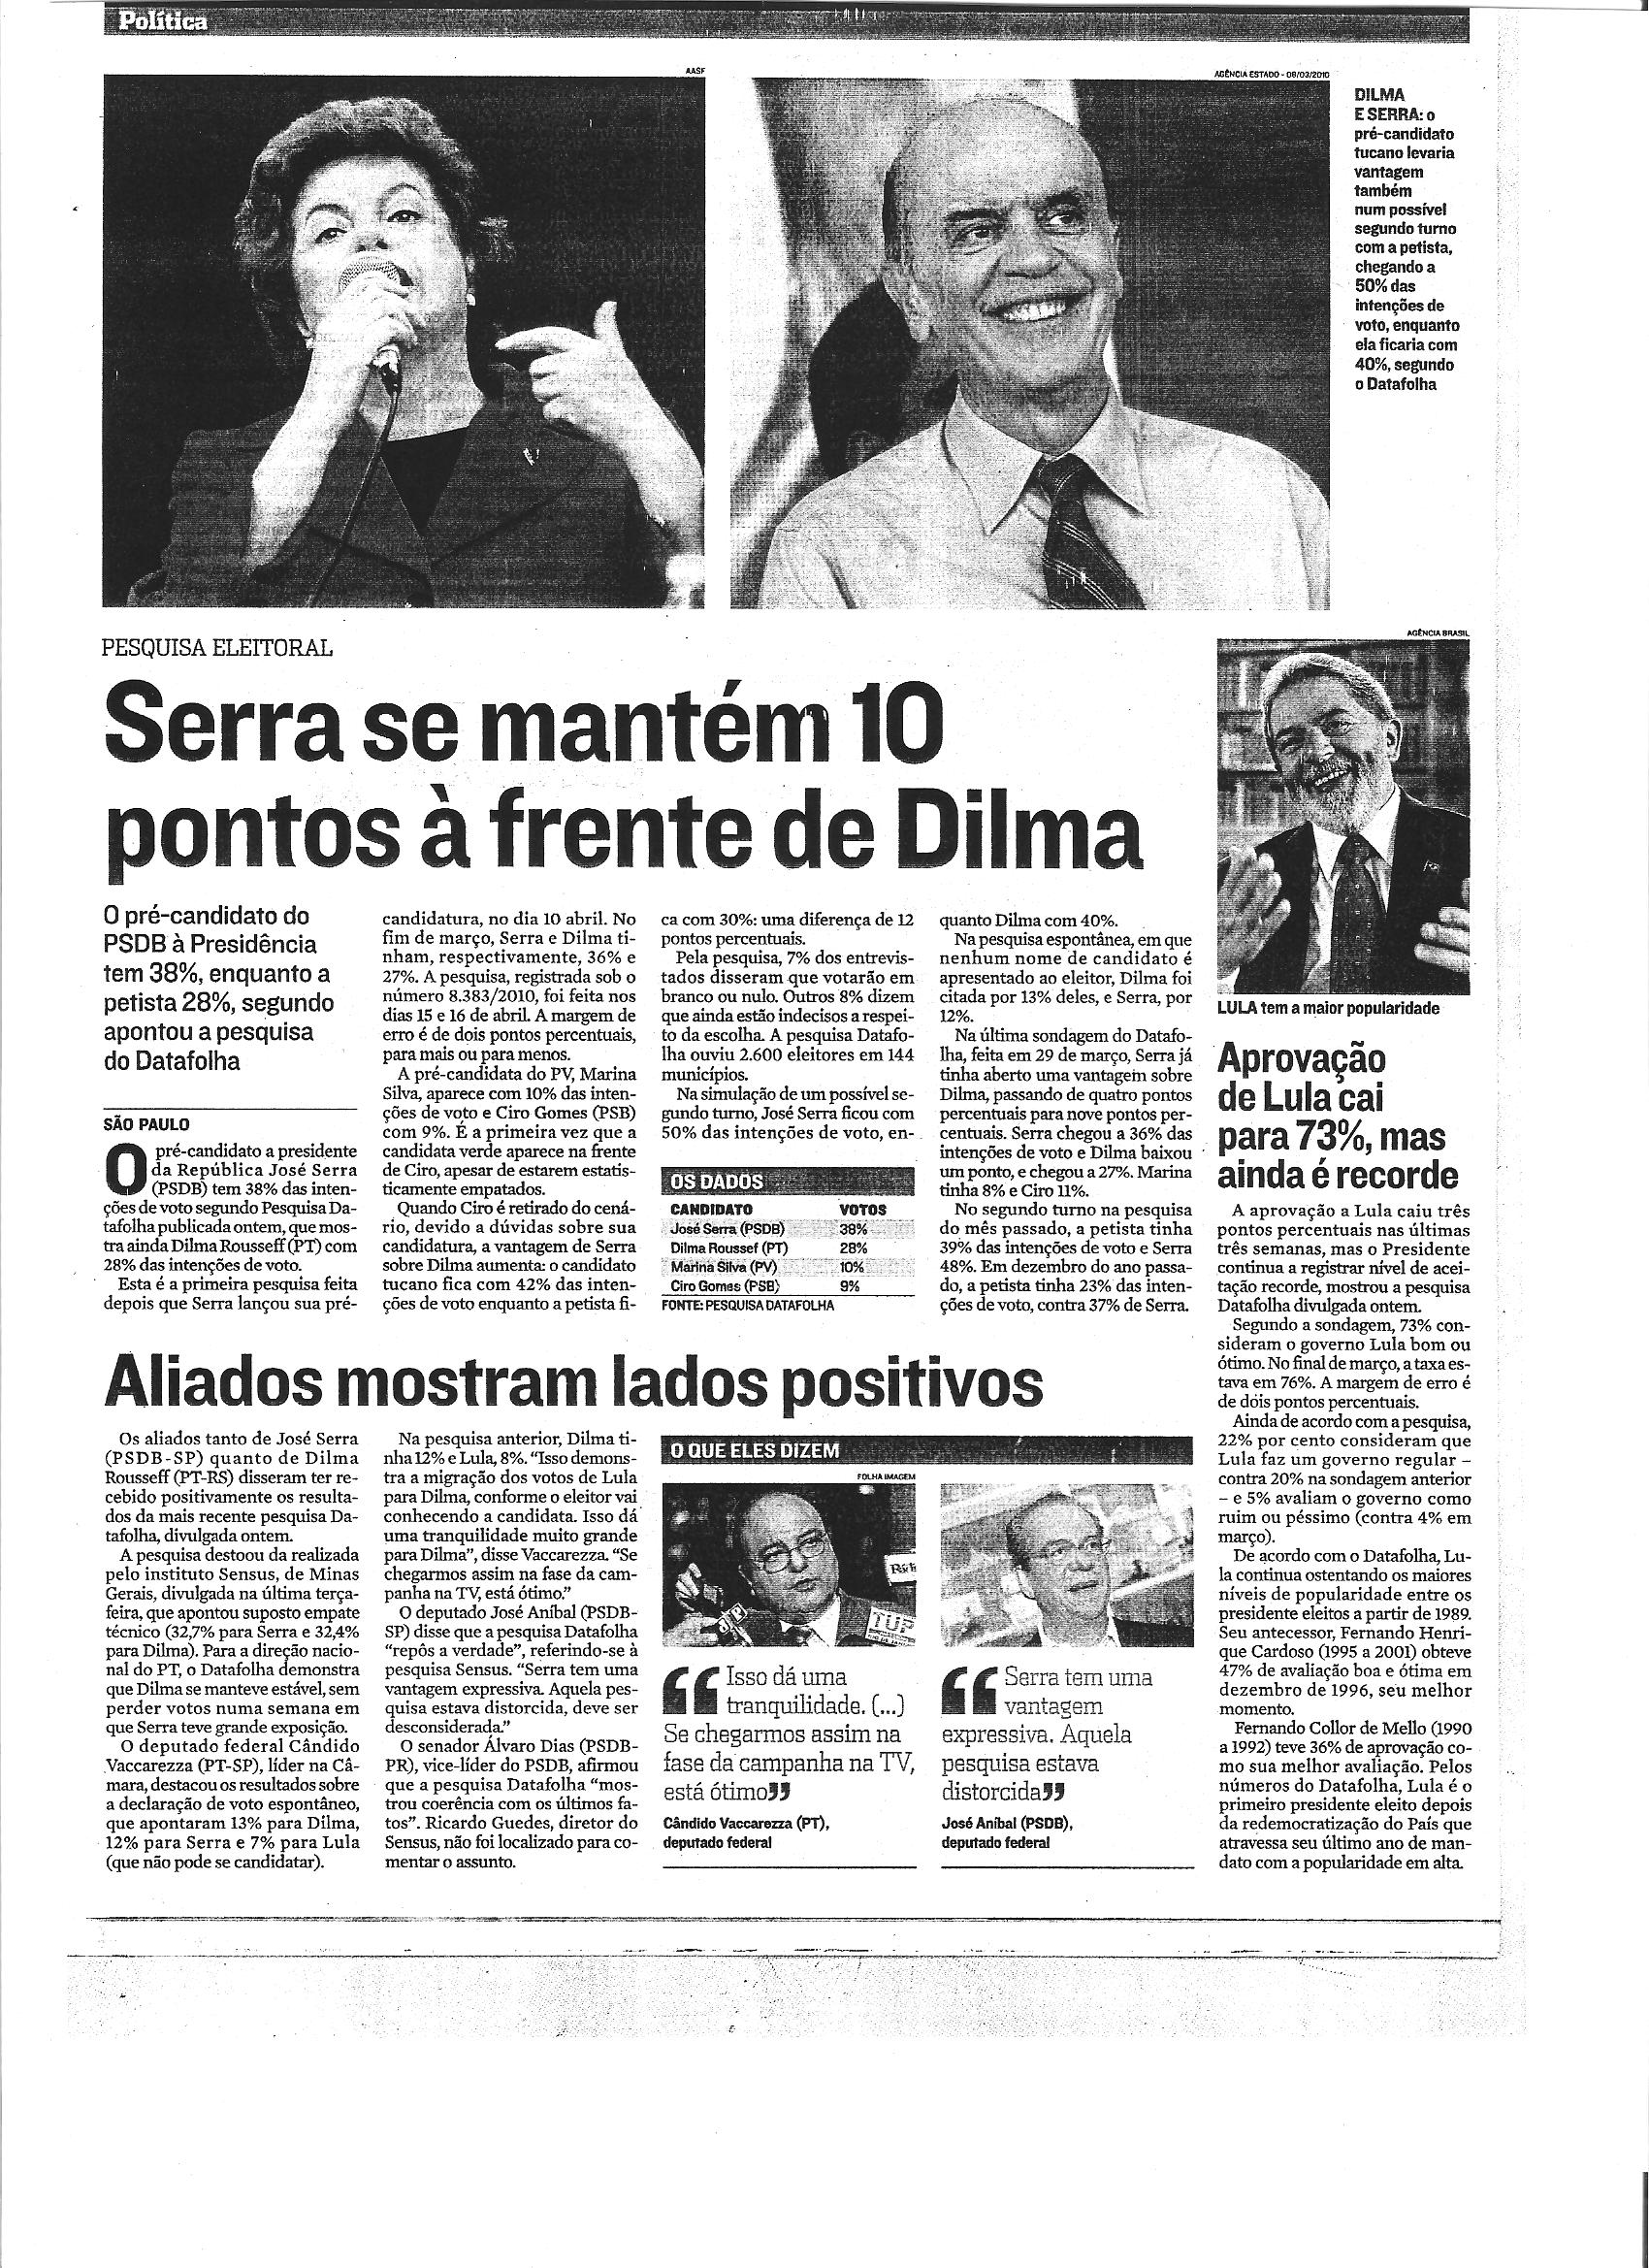 Política - Serra se mantém 10 pontos à frente de Dilma